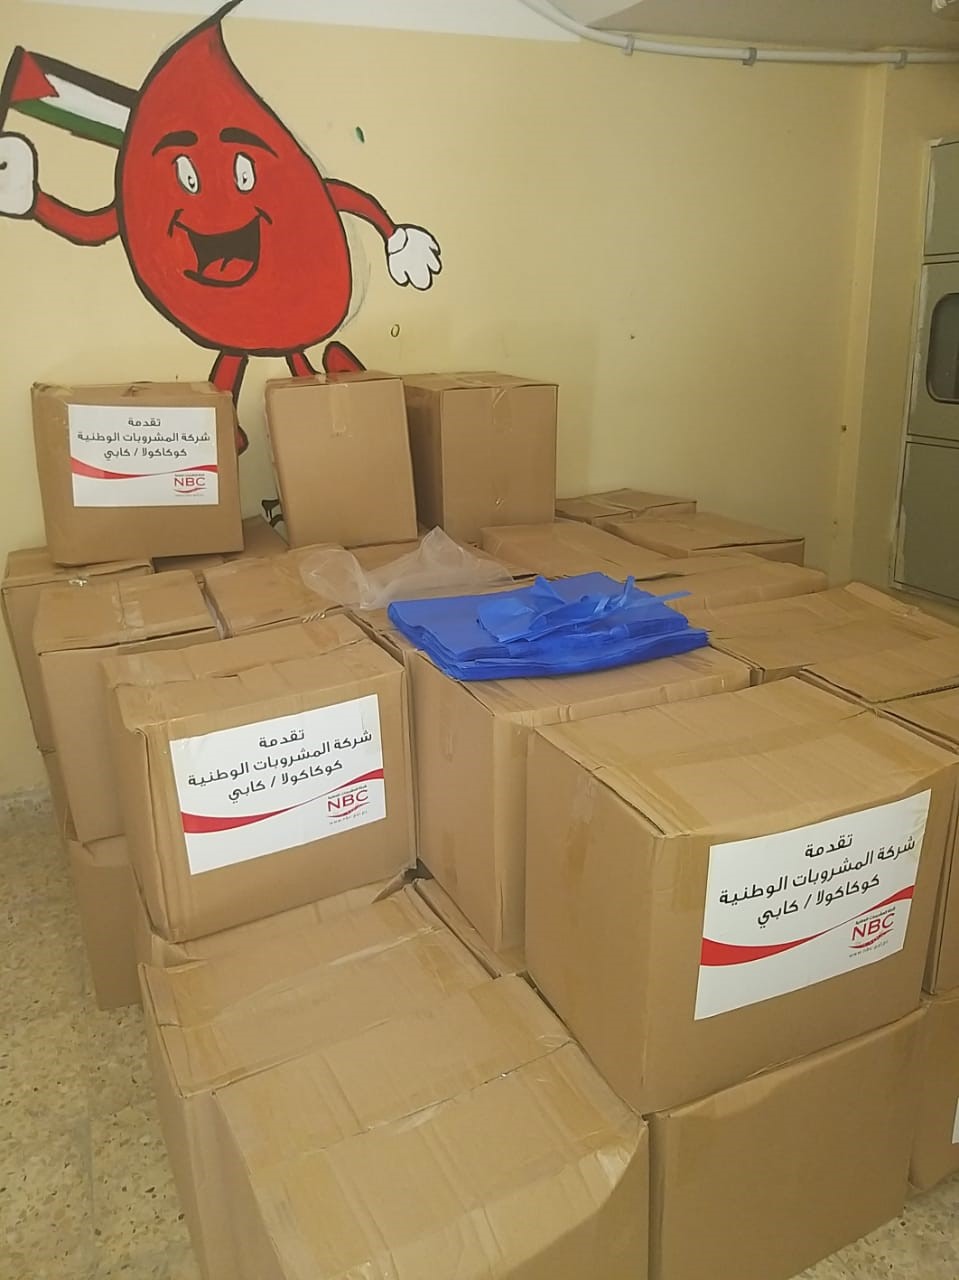 المشروبات الوطنية تتبرع لمرضى الثلاسيميا وتطلق حملة "بسمة عيد" لمساندة الأيتام